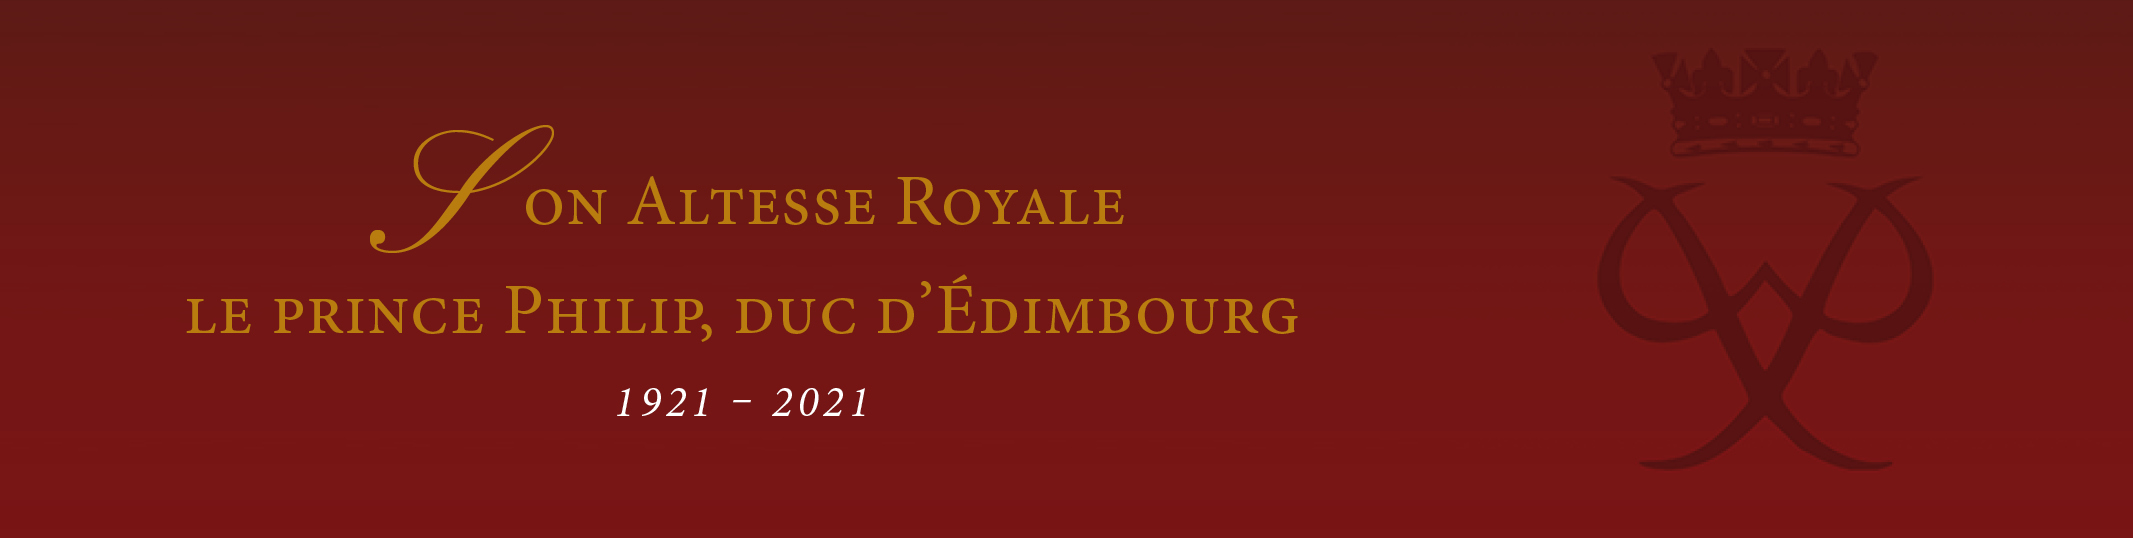 dcs de Son Altesse Royale le prince Philip, duc d'dimbourg